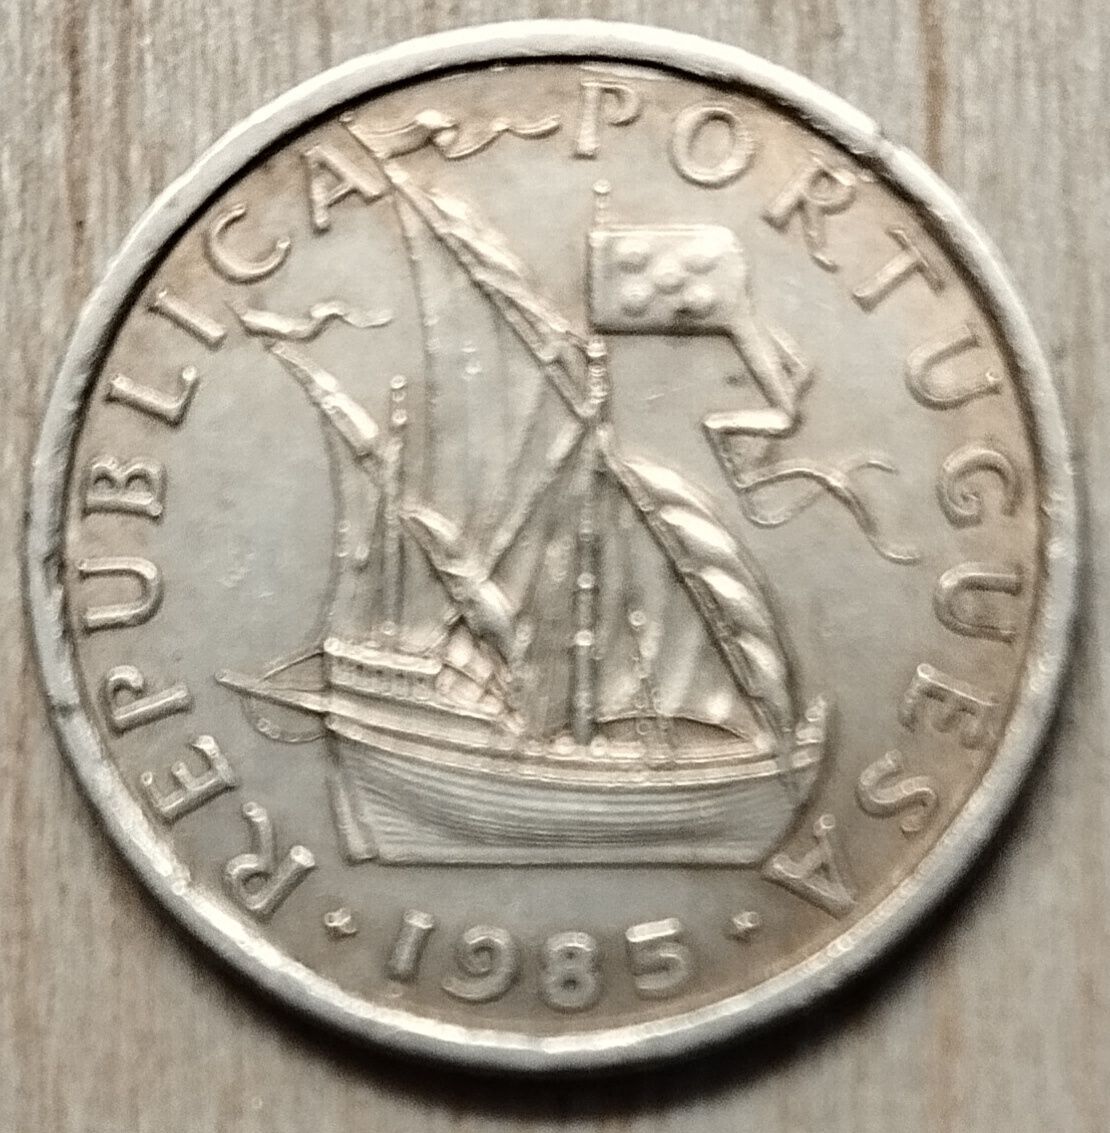 5 escudos de 1985